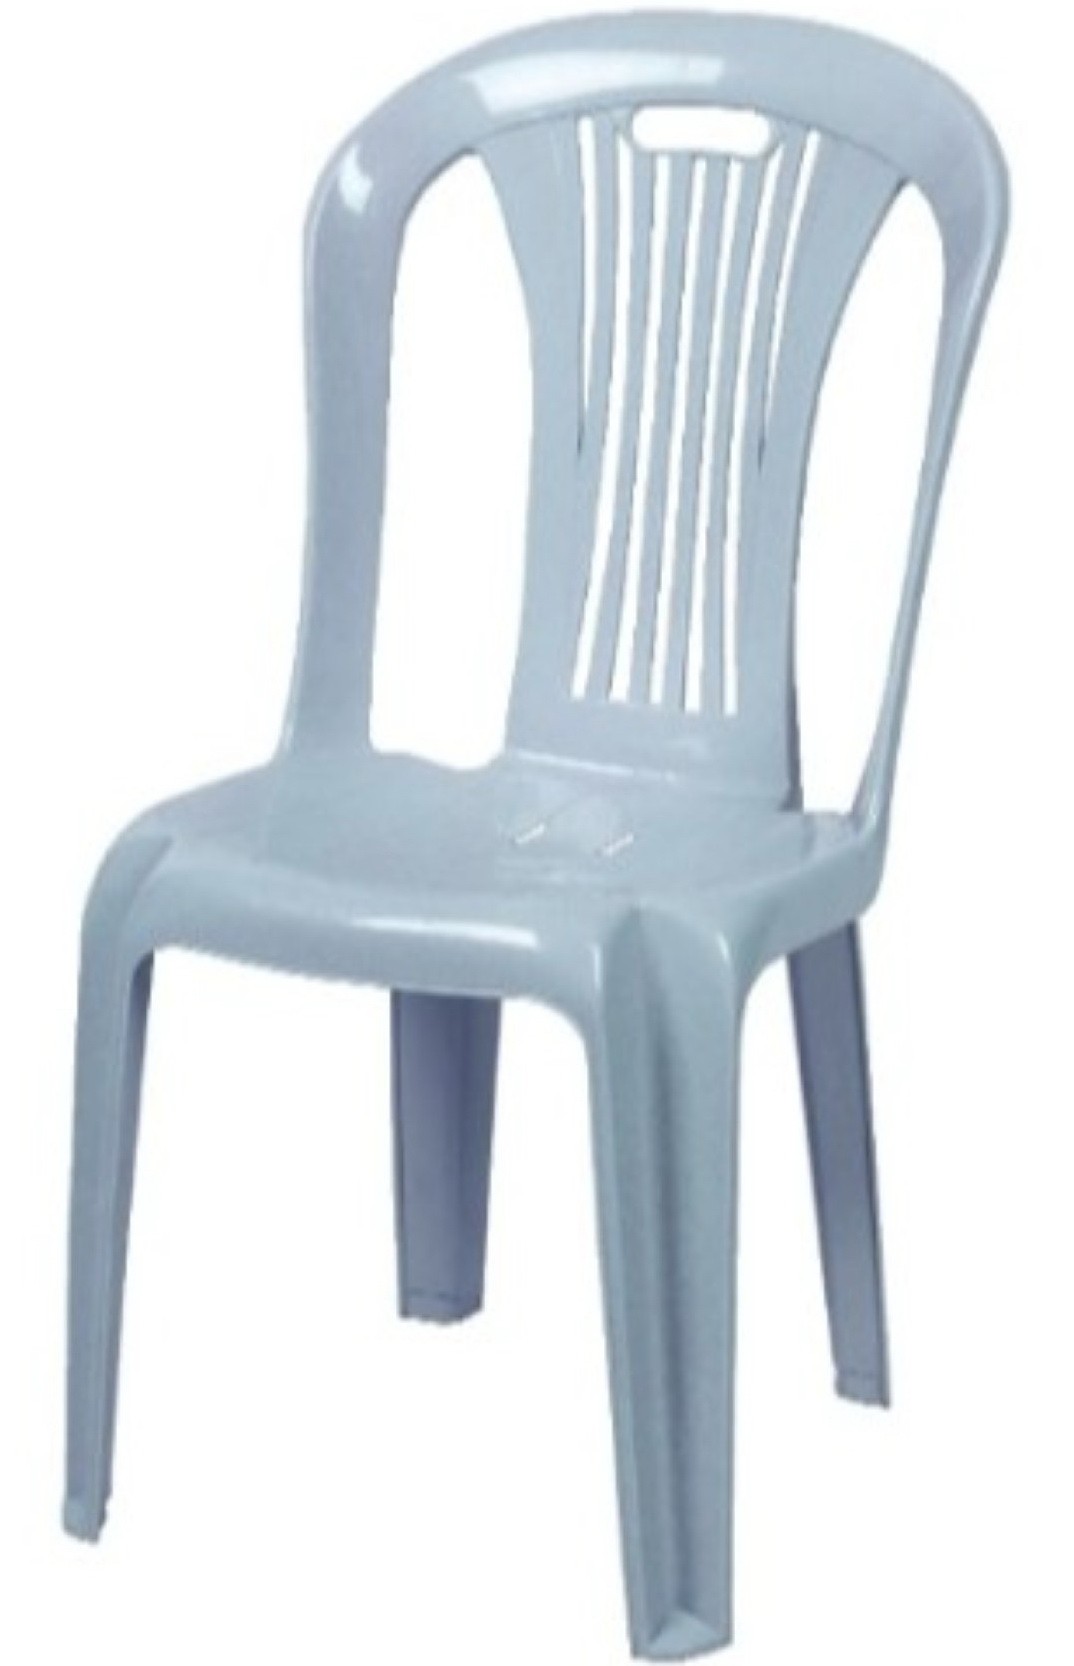 Στοιβαζόμενη πλαστική καρέκλα 720 βεντάλια